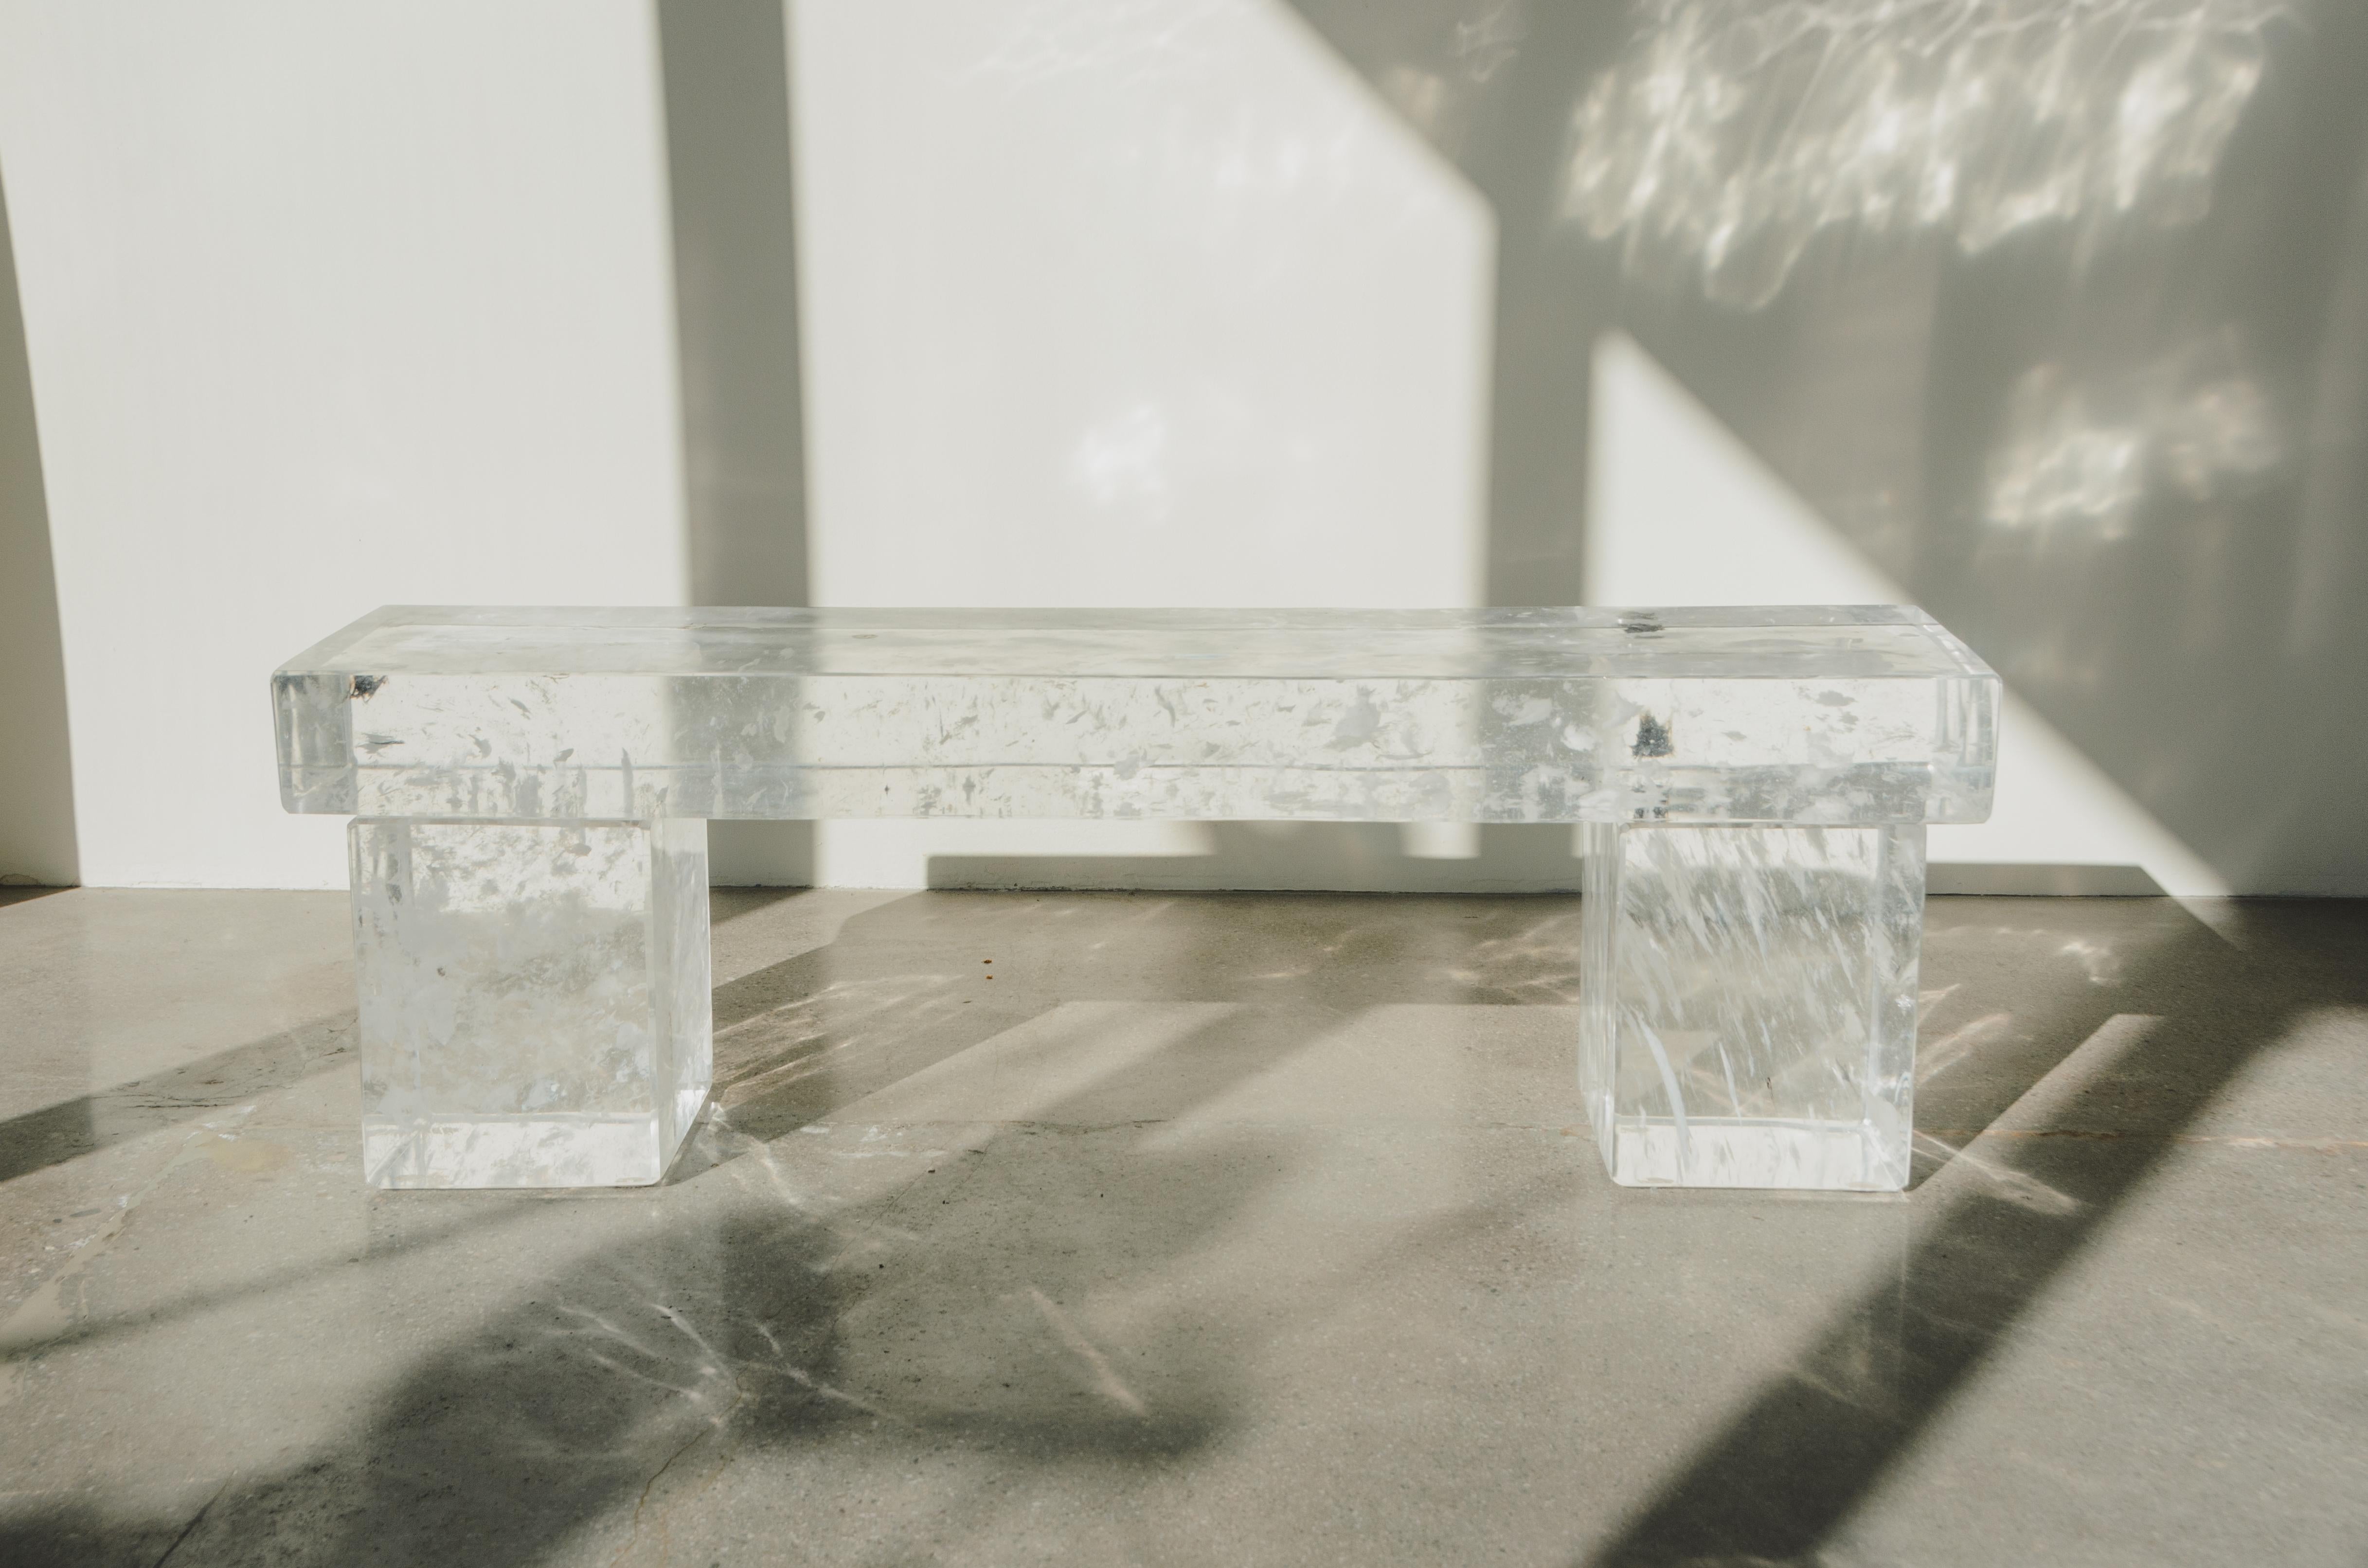 Ensemble de 3 bancs
Cristal
Sculpté à la main
Chaque pièce est fabriquée individuellement et est unique.
Les inclusions de cristaux varient 
Le cristal de Robert Kuo est sculpté selon les techniques de sculpture manuelle du jade. 



